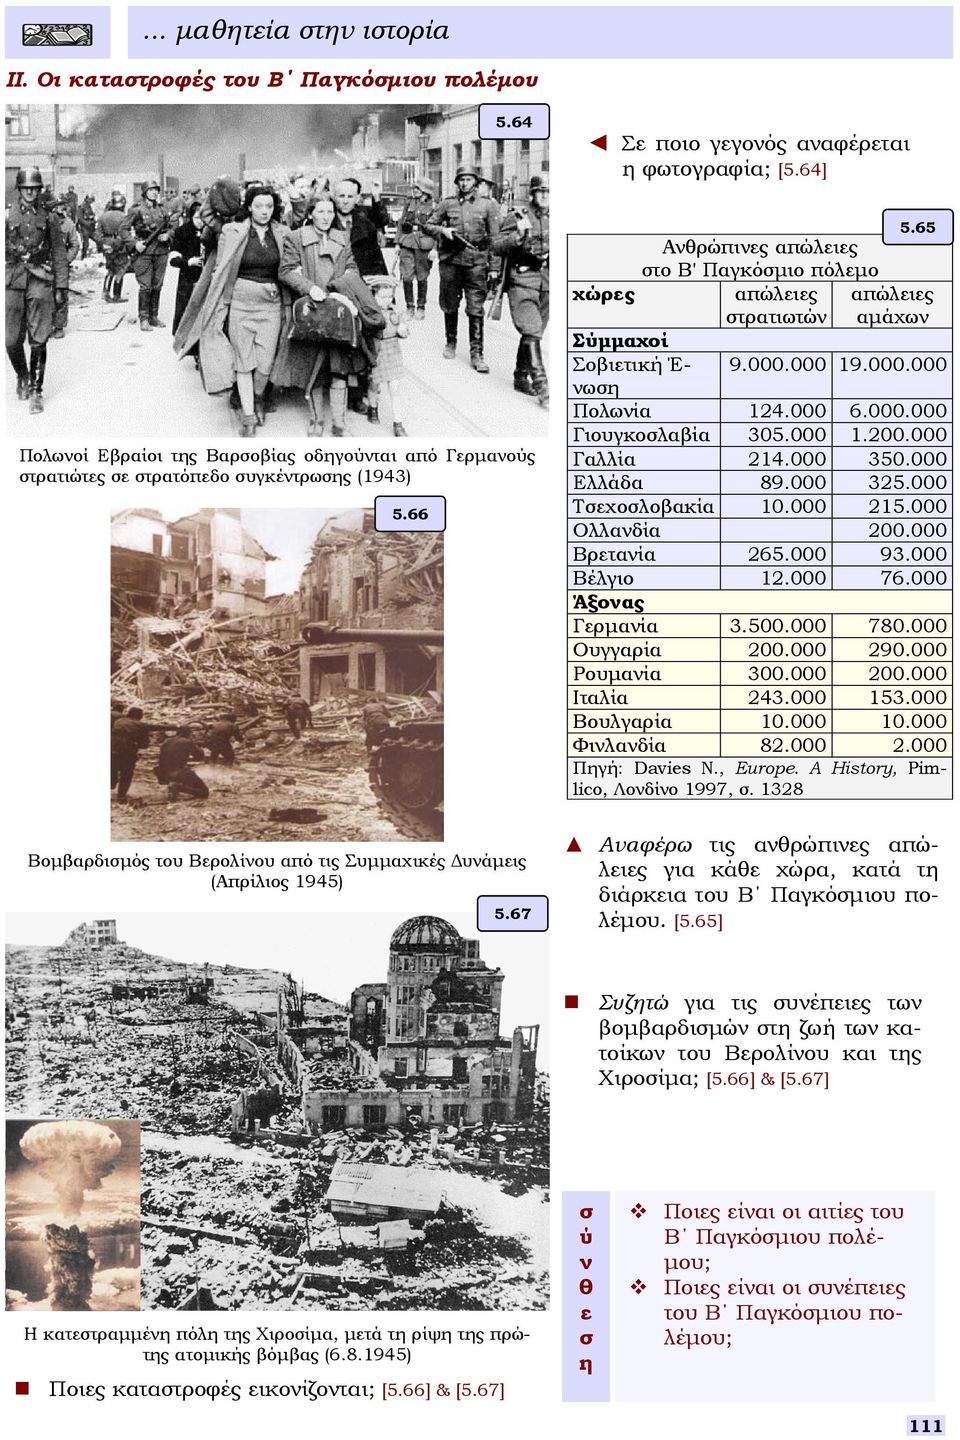 66 Ανθρώπινες απώλειες το Β' Παγκόµιο πόλεµο χώρες απώλειες απώλειες τρατιωτών αµάχων Σύµµαχοί Σοβιετική Έ9.000.000 19.000.000 νωη Πολωνία 124.000 6.000.000 Γιουγκολαβία 305.000 1.200.000 Γαλλία 214.